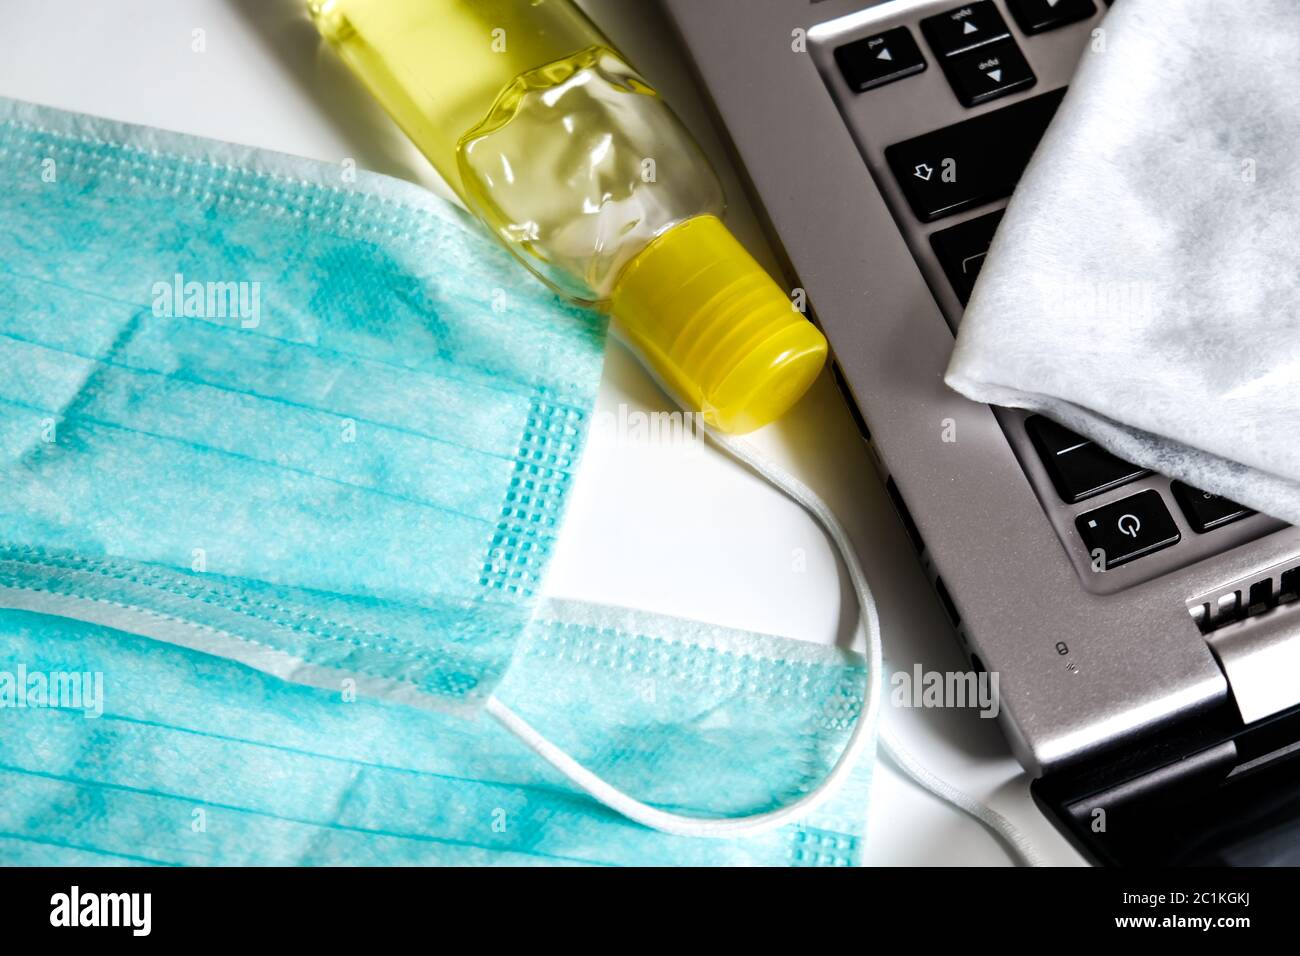 Les essentiels de prévention des virus : masques pour le visage, bouteille jaune de désinfectant pour les mains et serviette pour nettoyer un ordinateur portable. Étude à domicile ou environnement de travail isolé Banque D'Images